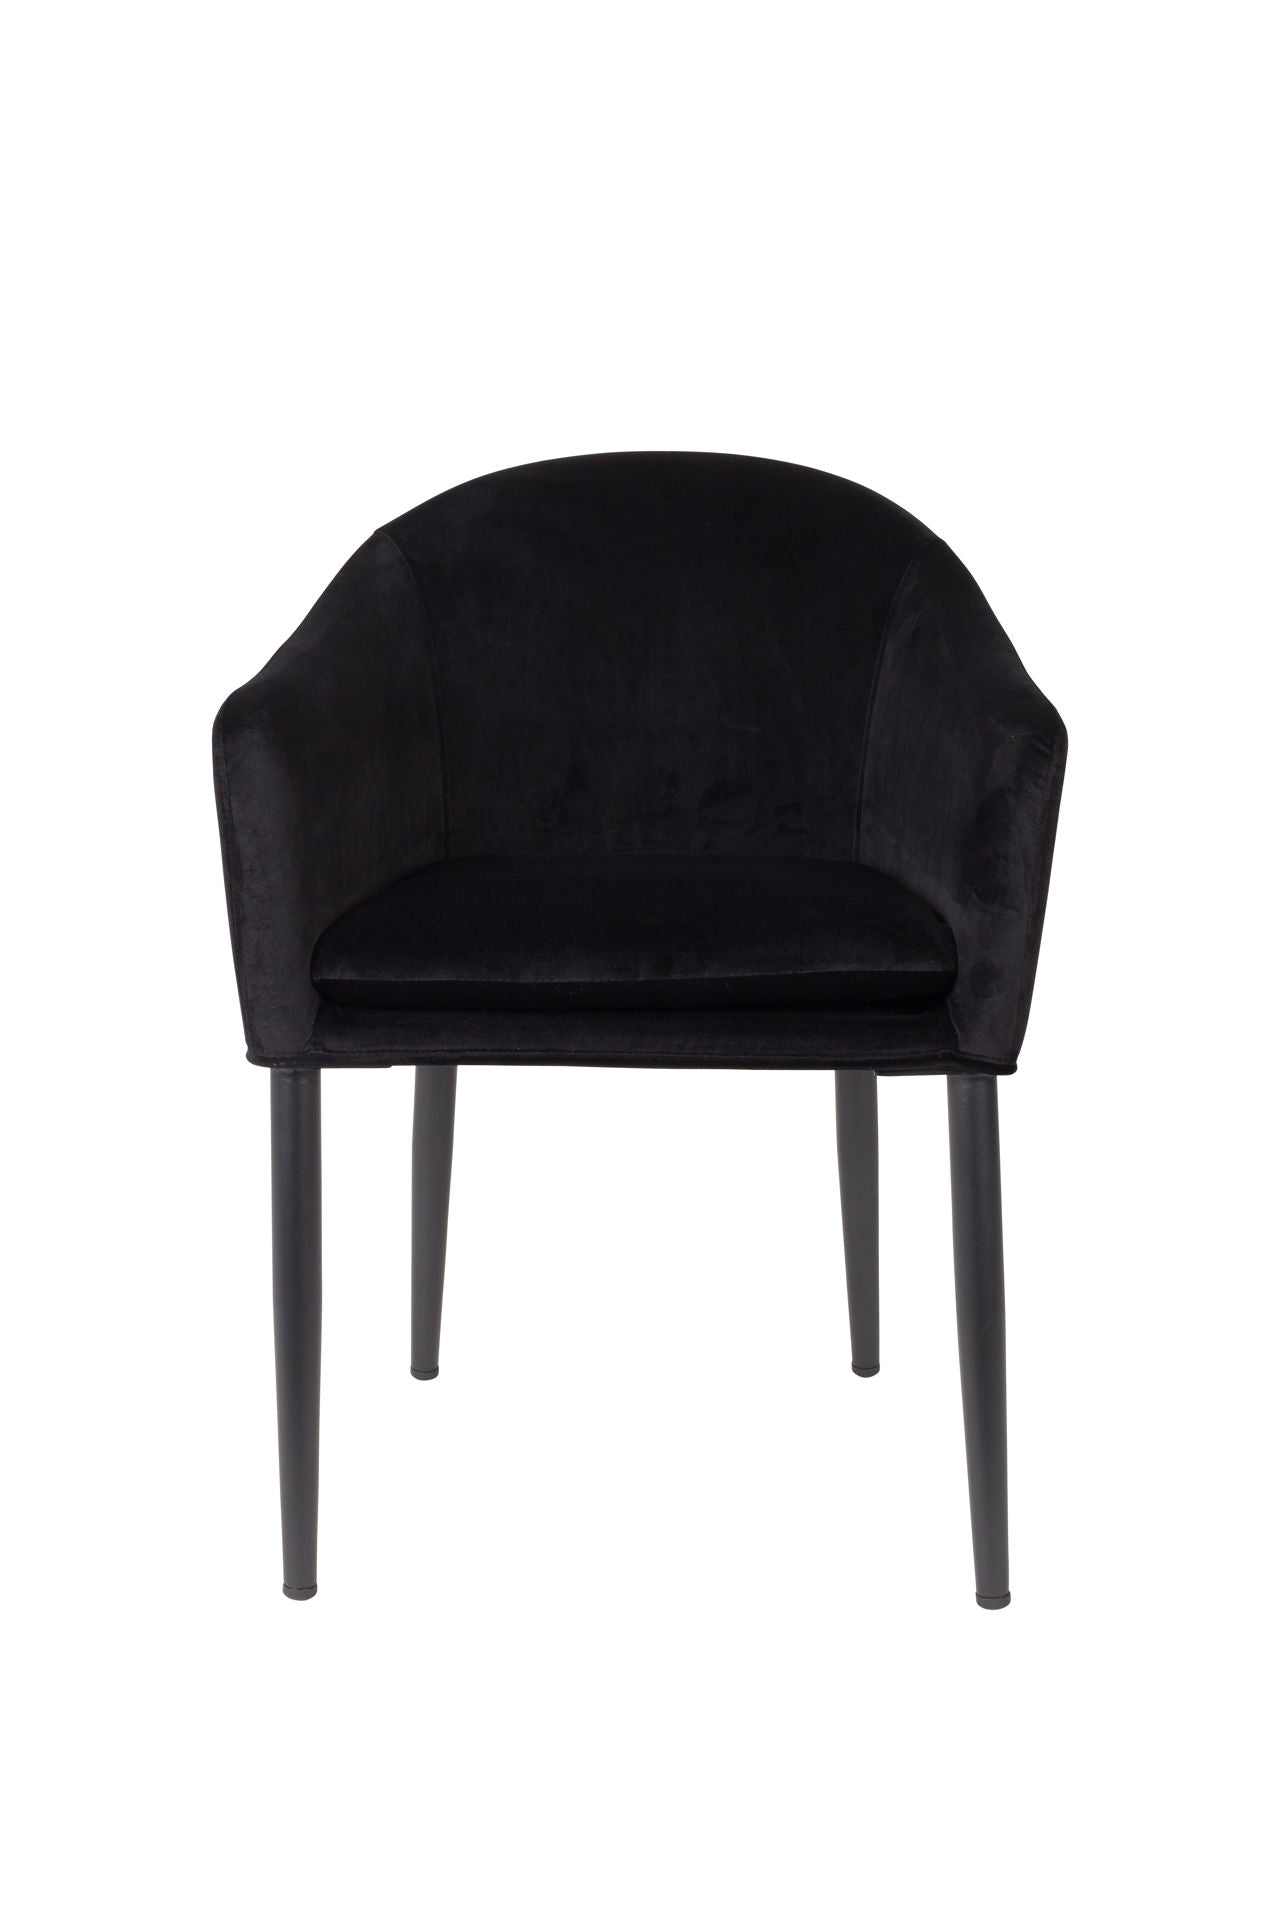 Nancy's Green Cove Springs Chair - Rétro - Noir - Velours, Contreplaqué, Acier - 55,5 cm x 57 cm x 77 cm